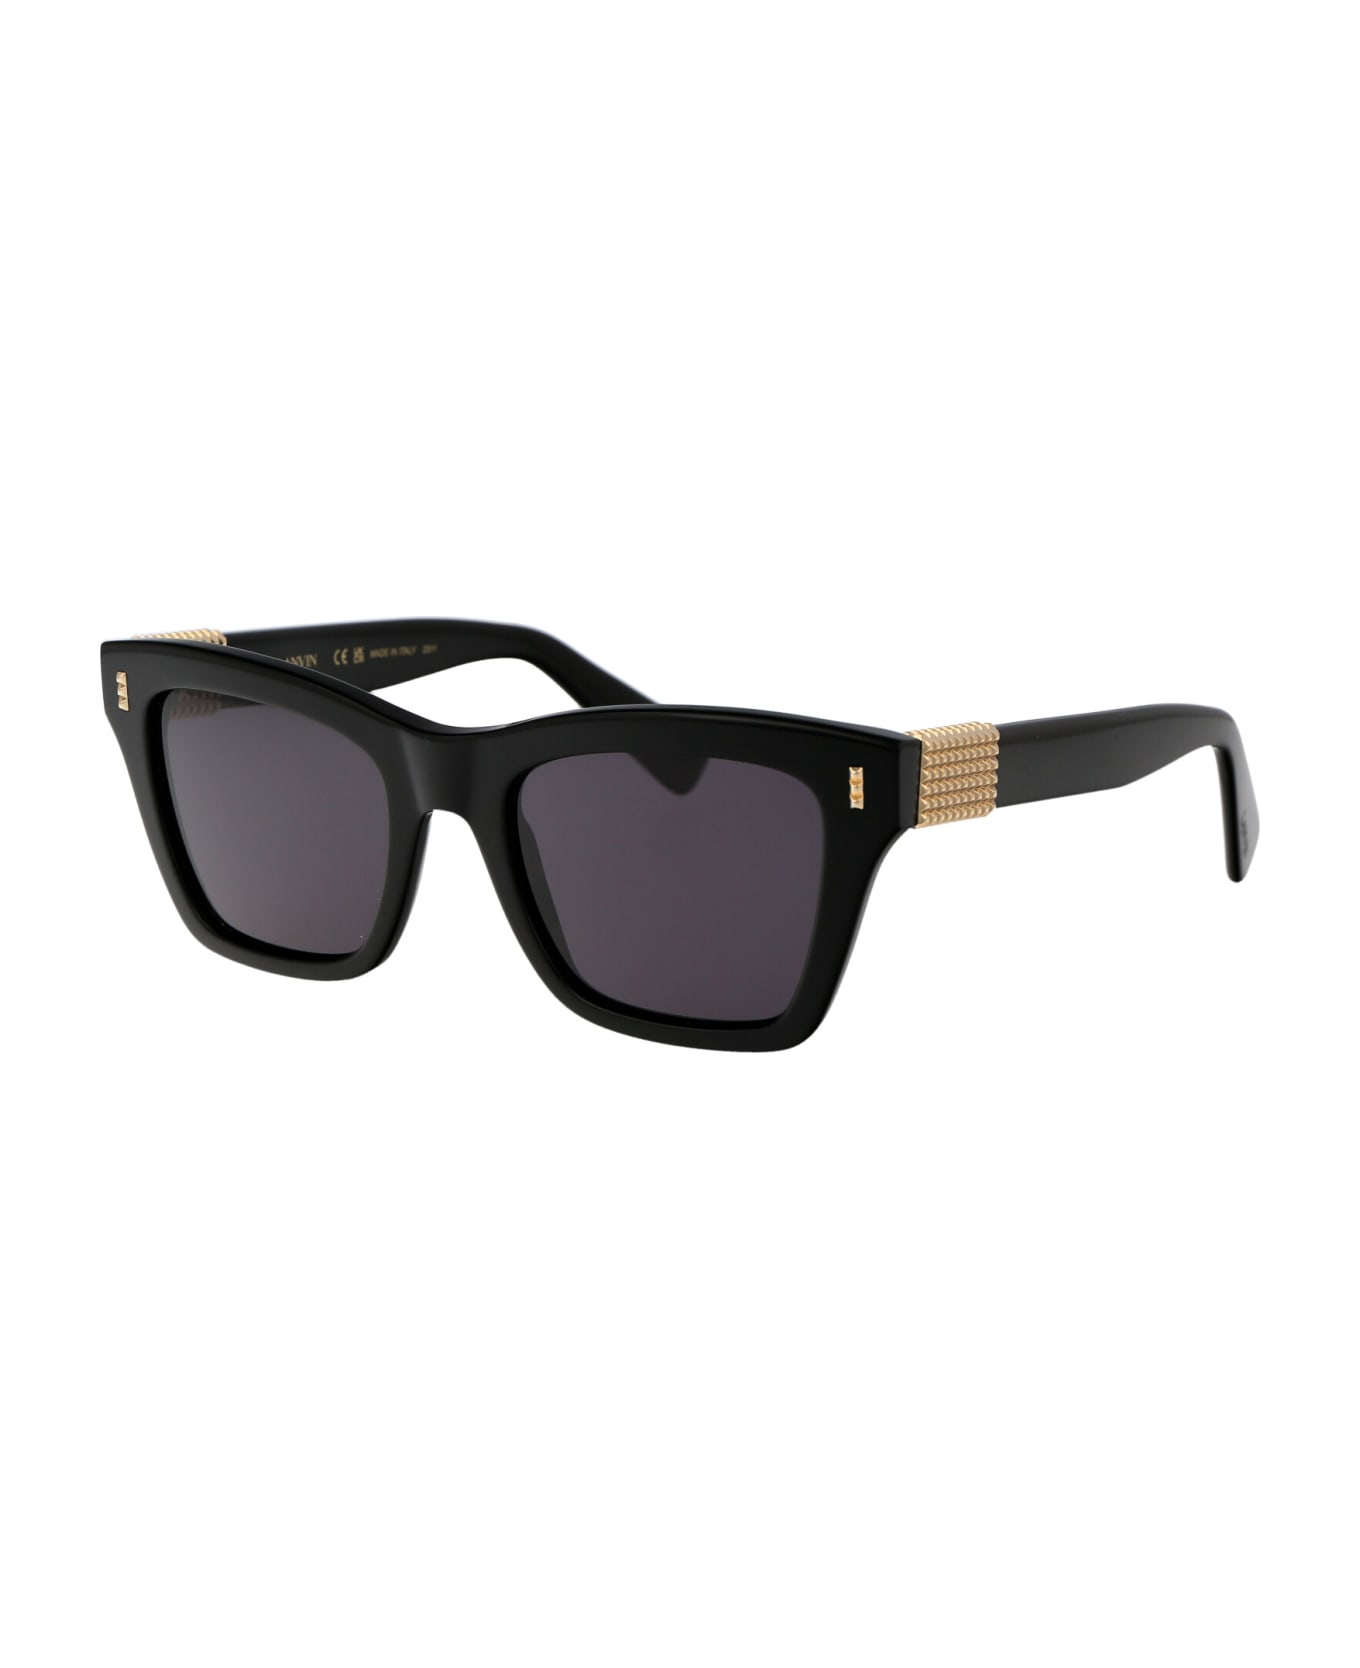 Lanvin Lnv668s Sunglasses - 001 BLACK